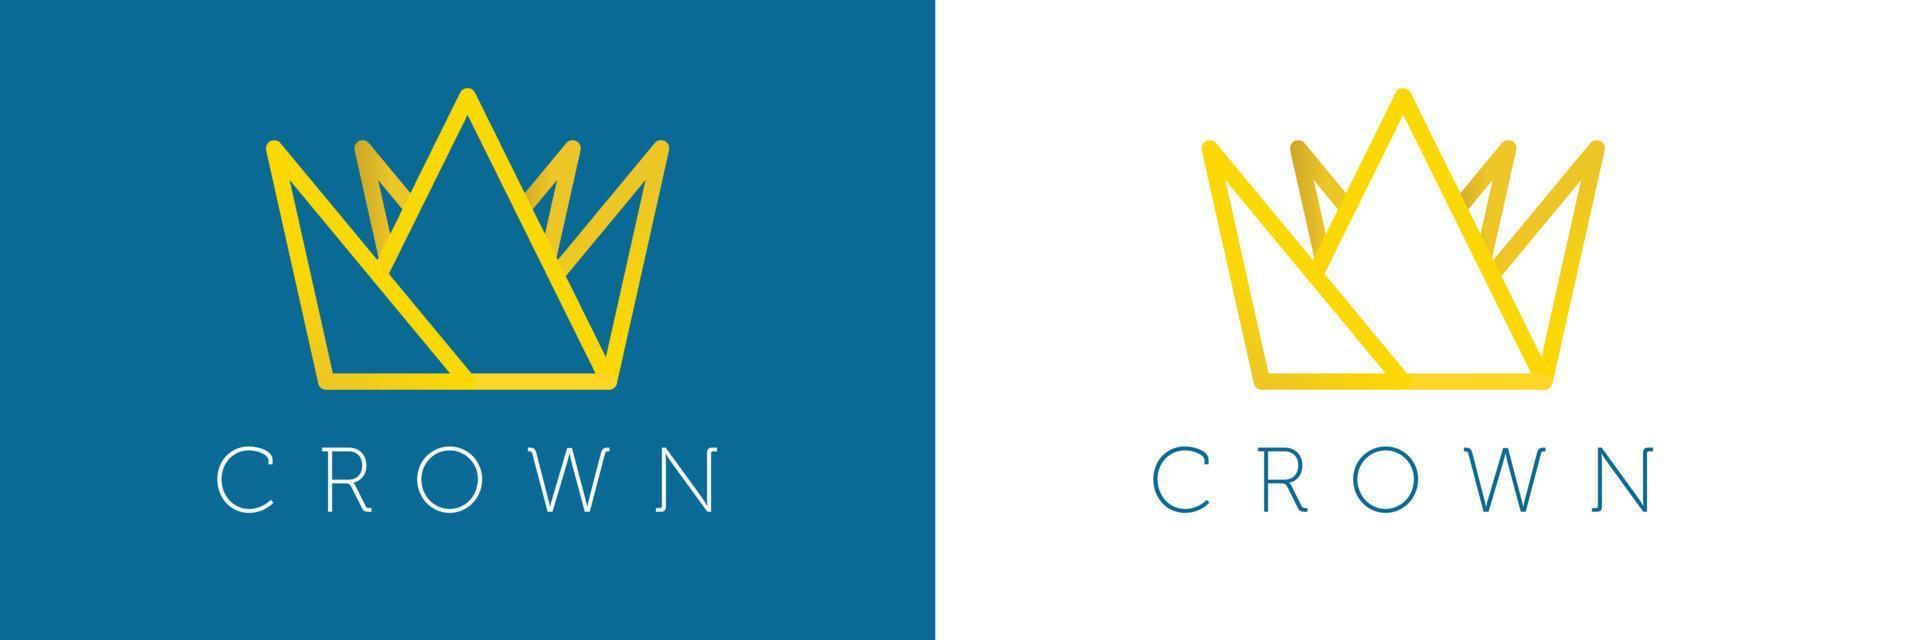 moderne kroon logo ontwerpsjabloon. kroon logo pictogram ontwerp vector. vector